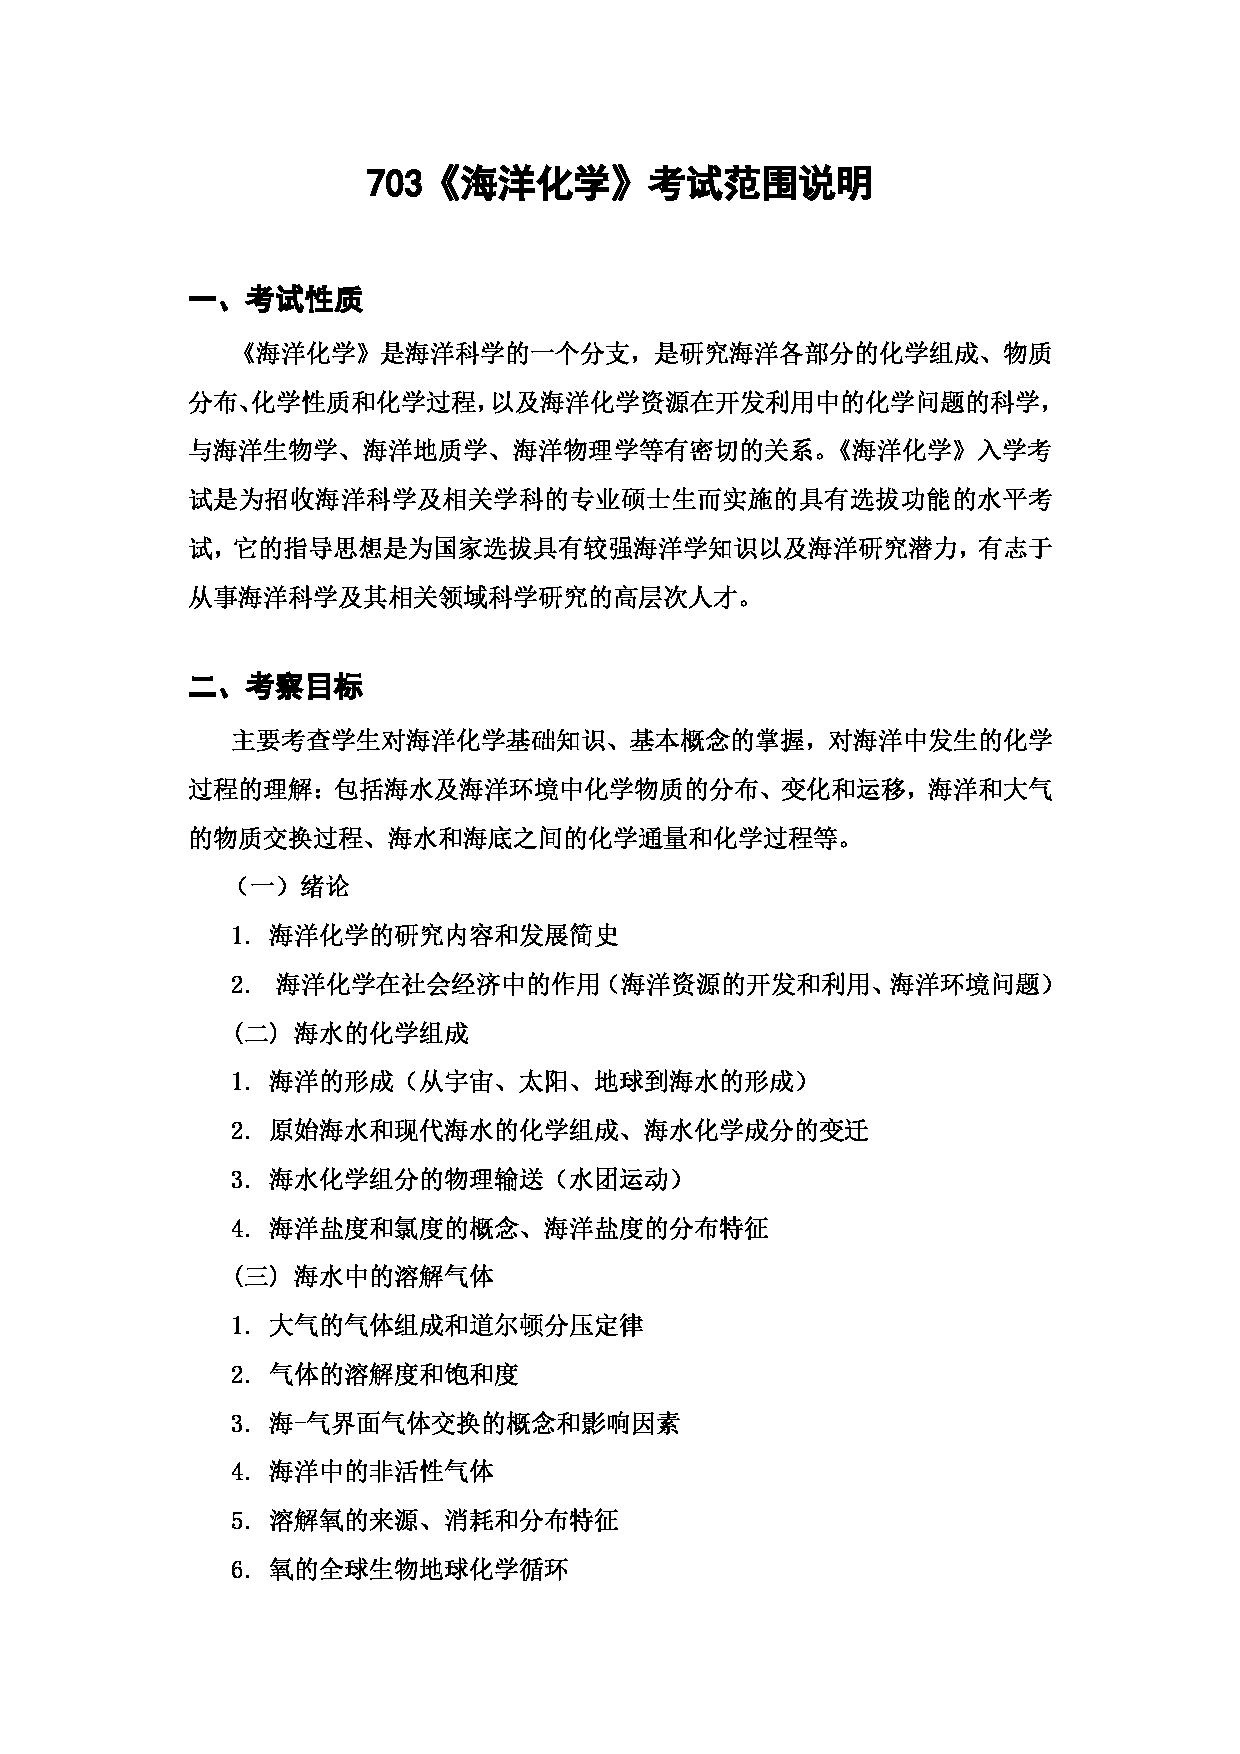 上海海洋大学2023年考研自命题科目 703《海洋化学》 考试范围第1页